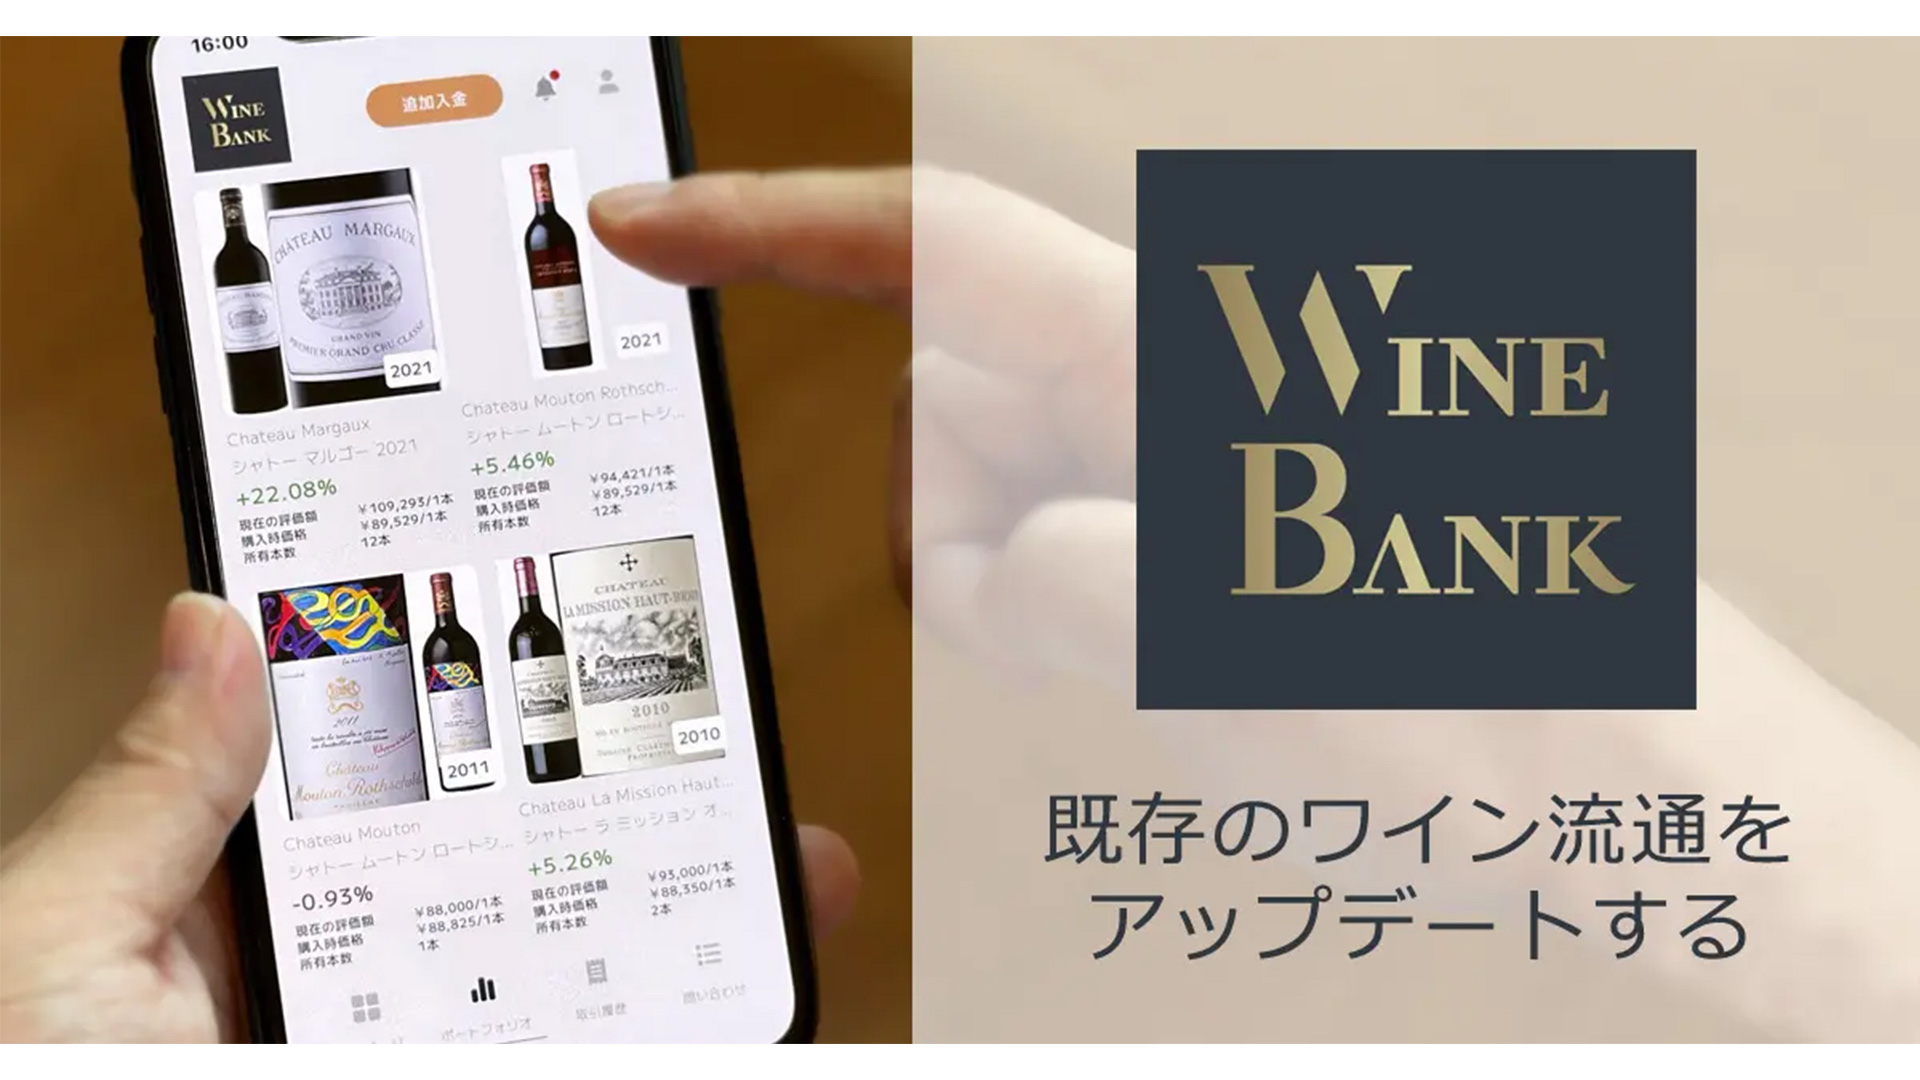 株式会社WineBank、プレシリーズAにて1.5億円の資金調達ー累計調達額は3.5億円に